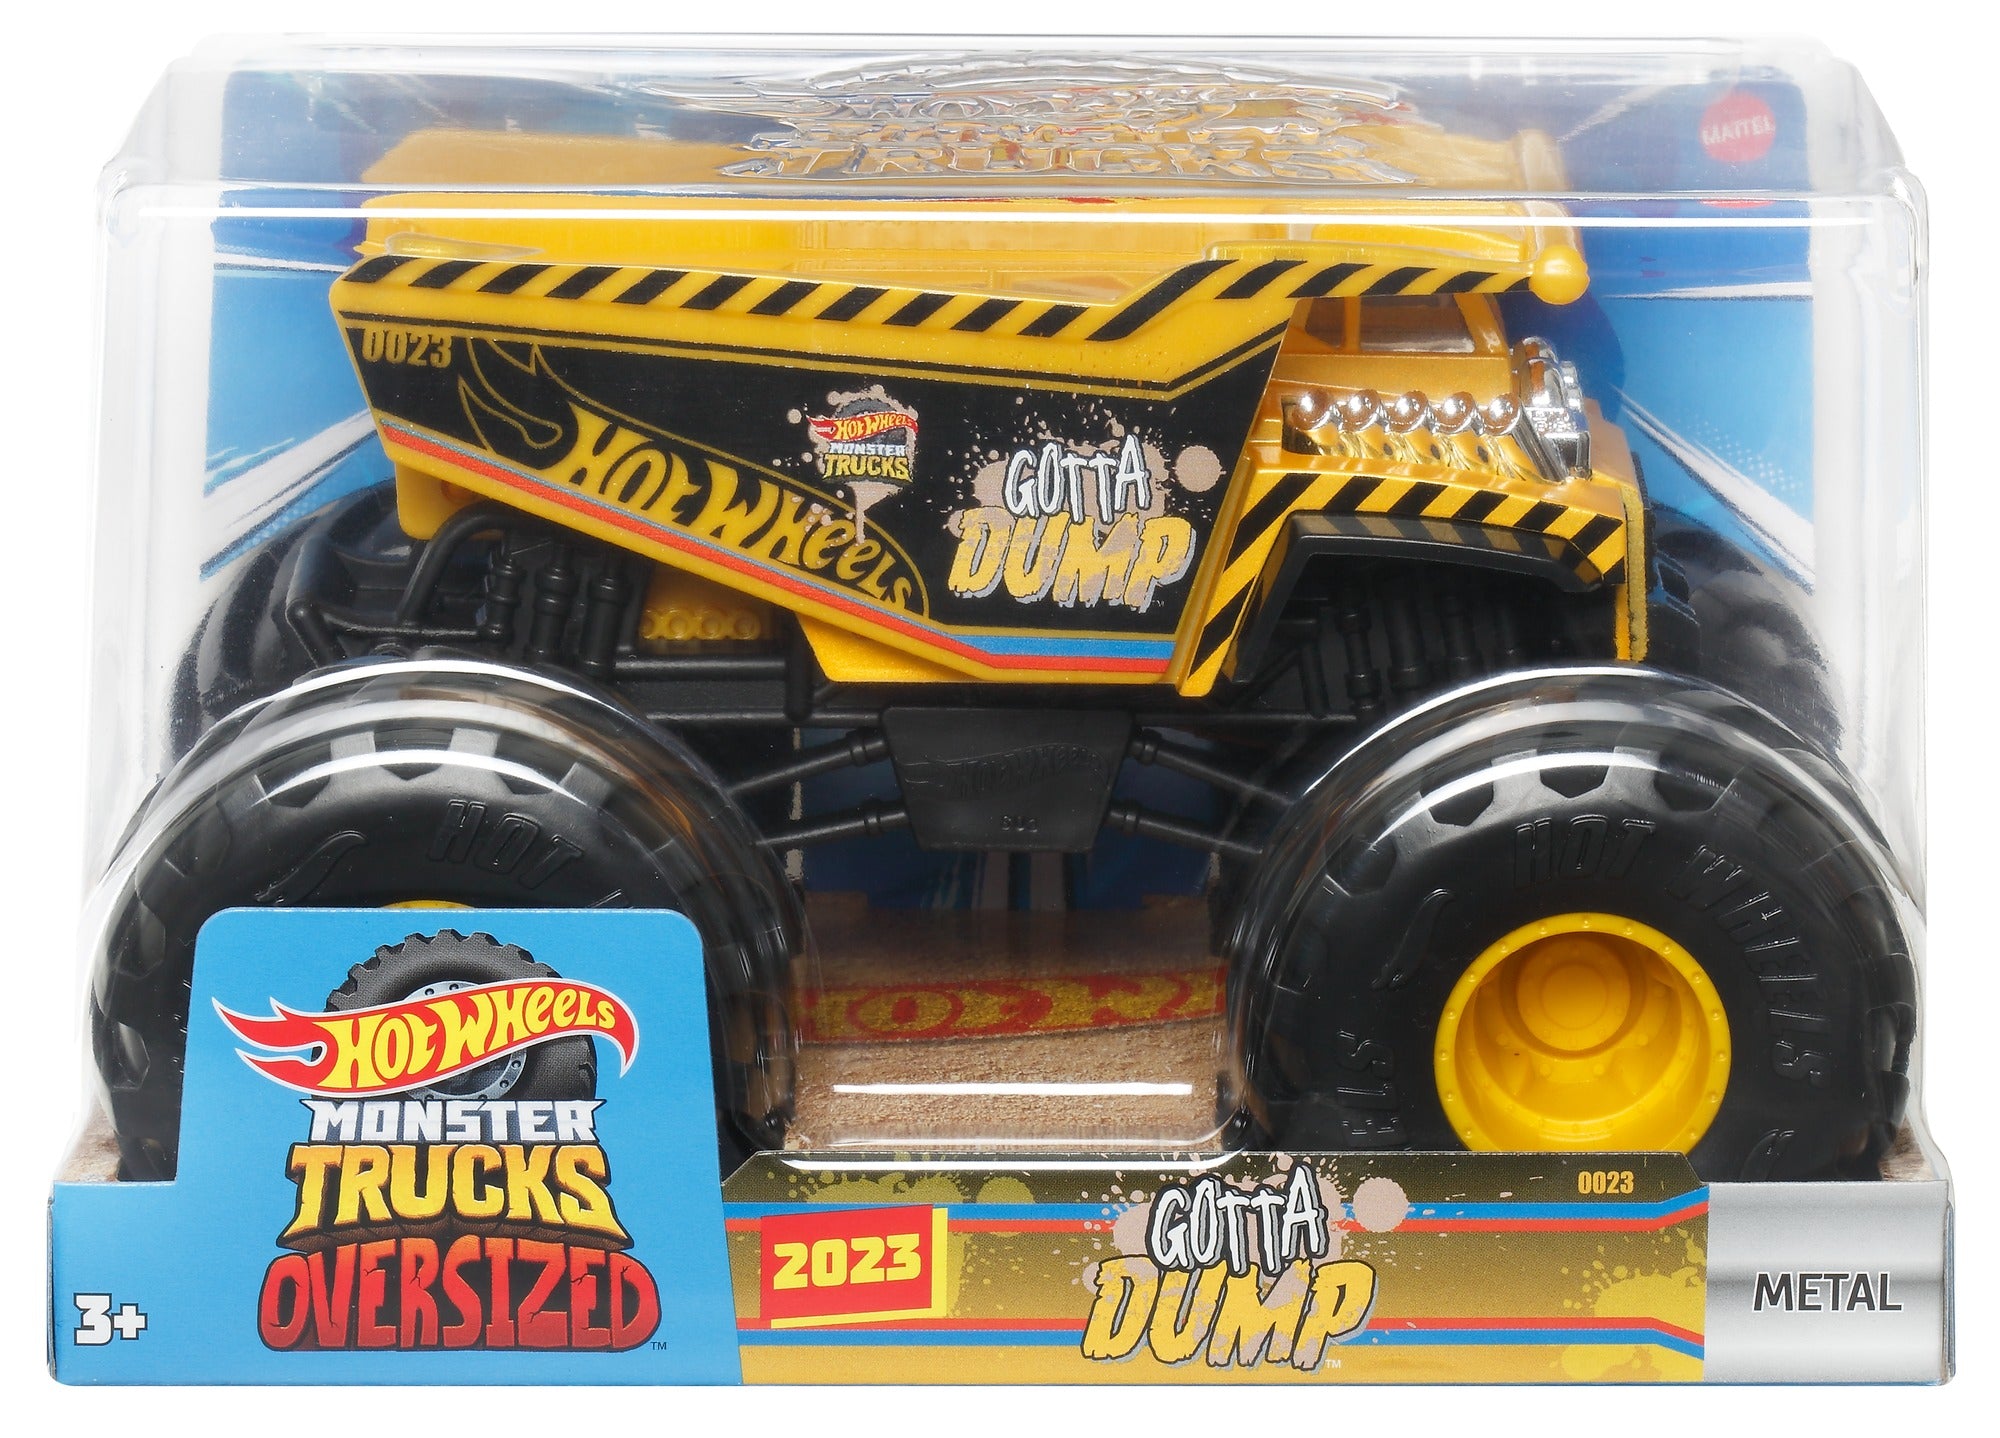 Hot Wheels Monster Trucks, Oversized Monster Truck in 1:24 Scale 